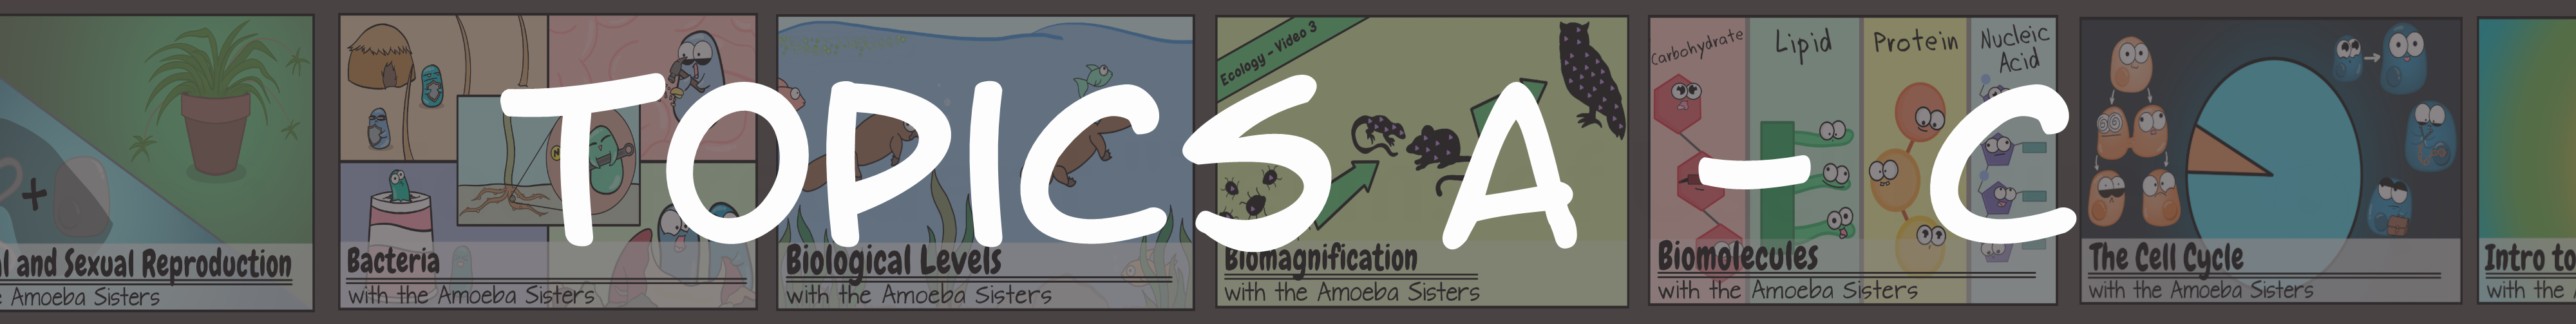 Amoeba Sisters Handouts